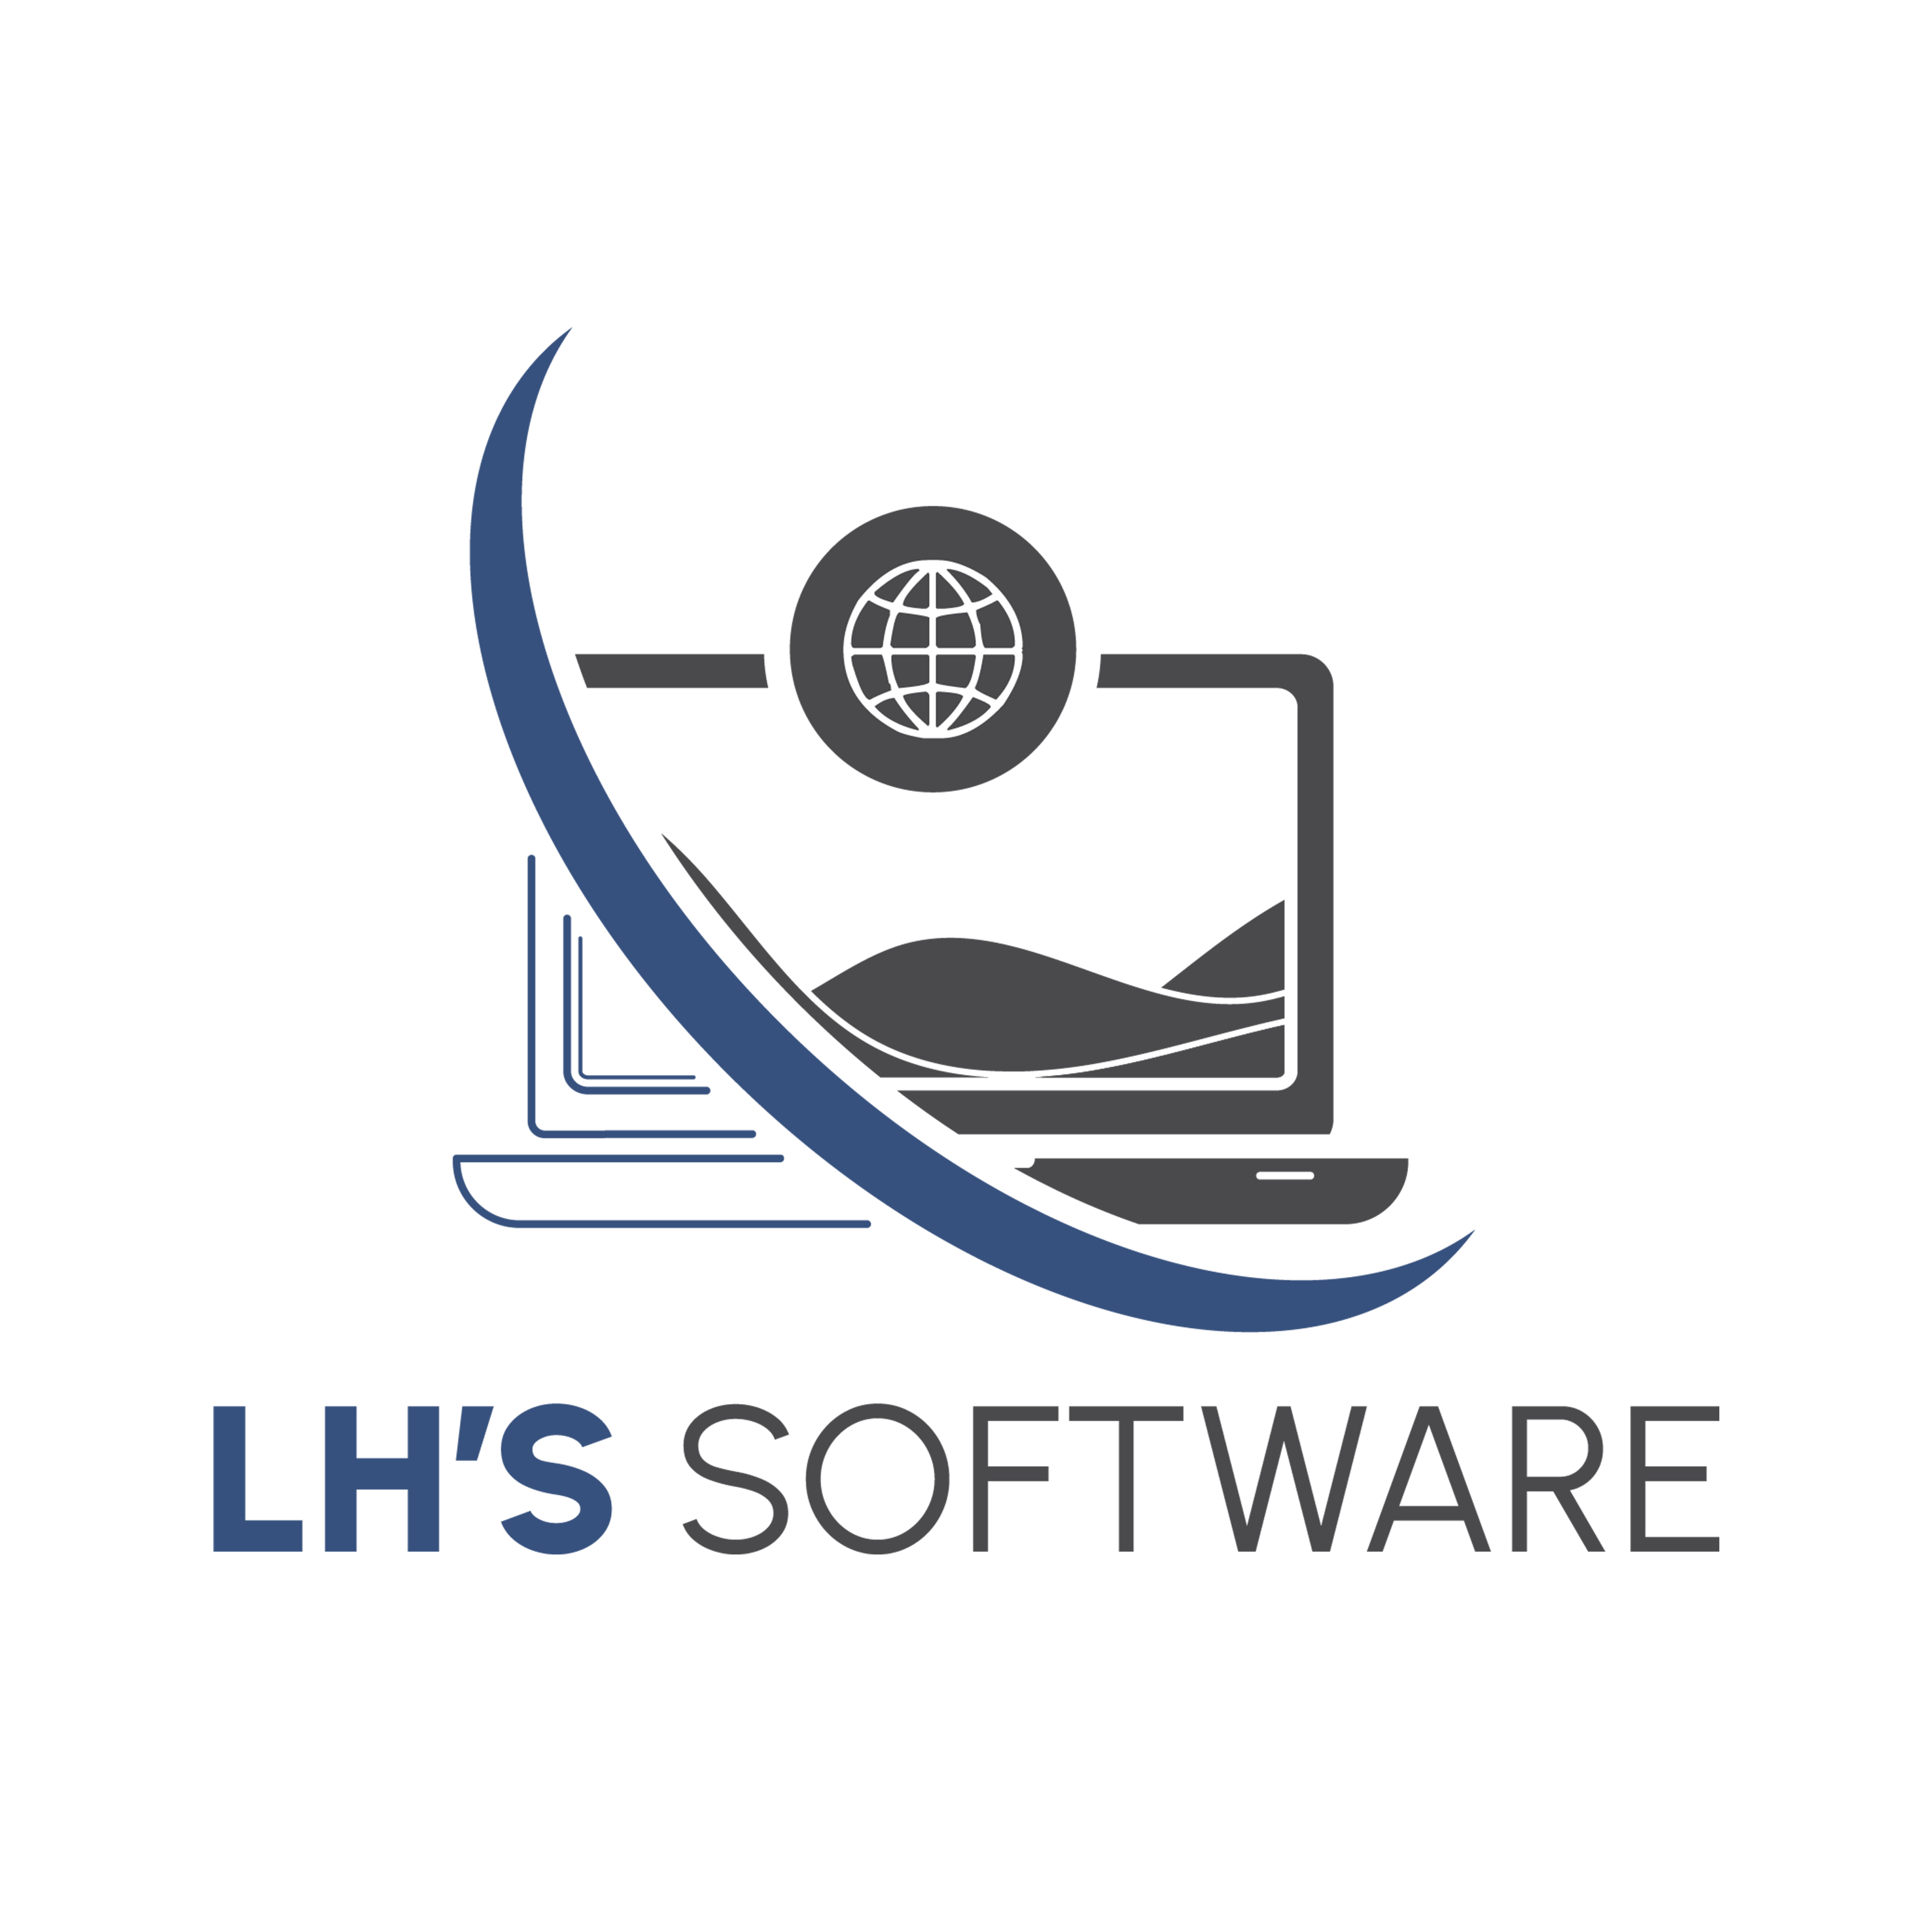 Lh's Software